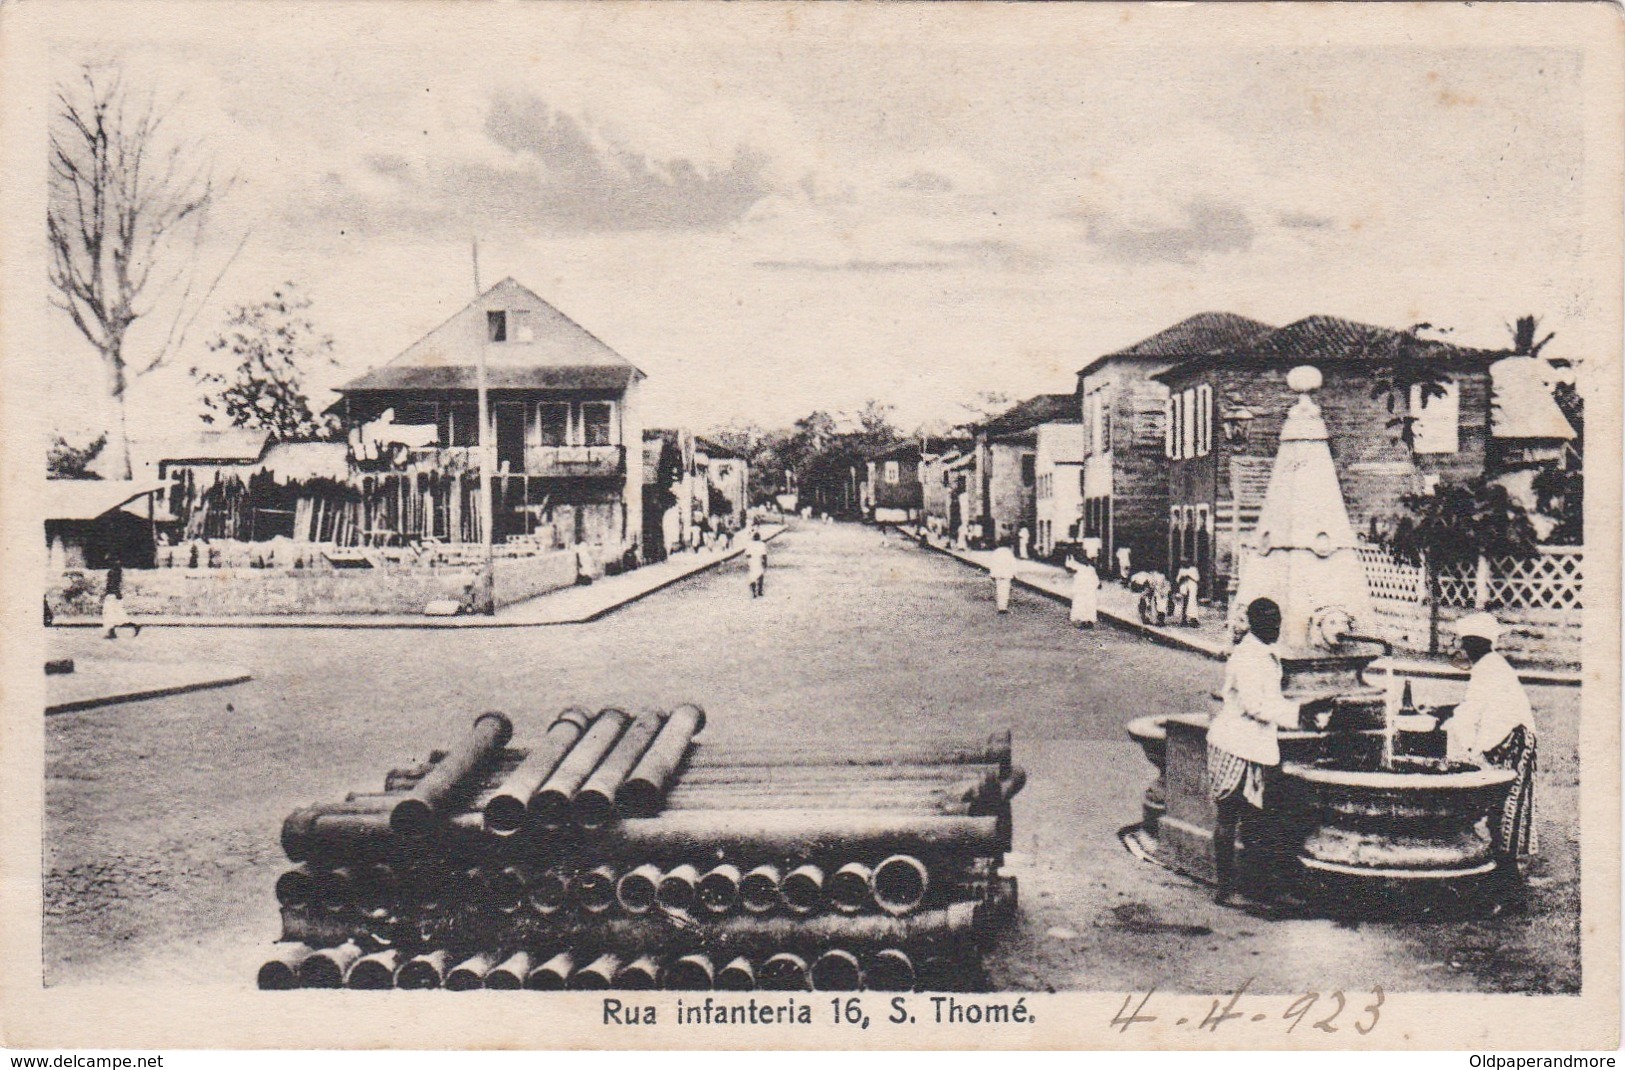 POSTCARD PORTUGAL - OLD COLONY - SÃO TOMÉ E  PRINCIPE - RUA INFANTARIA 16, S. THOMÉ - Sao Tome Et Principe